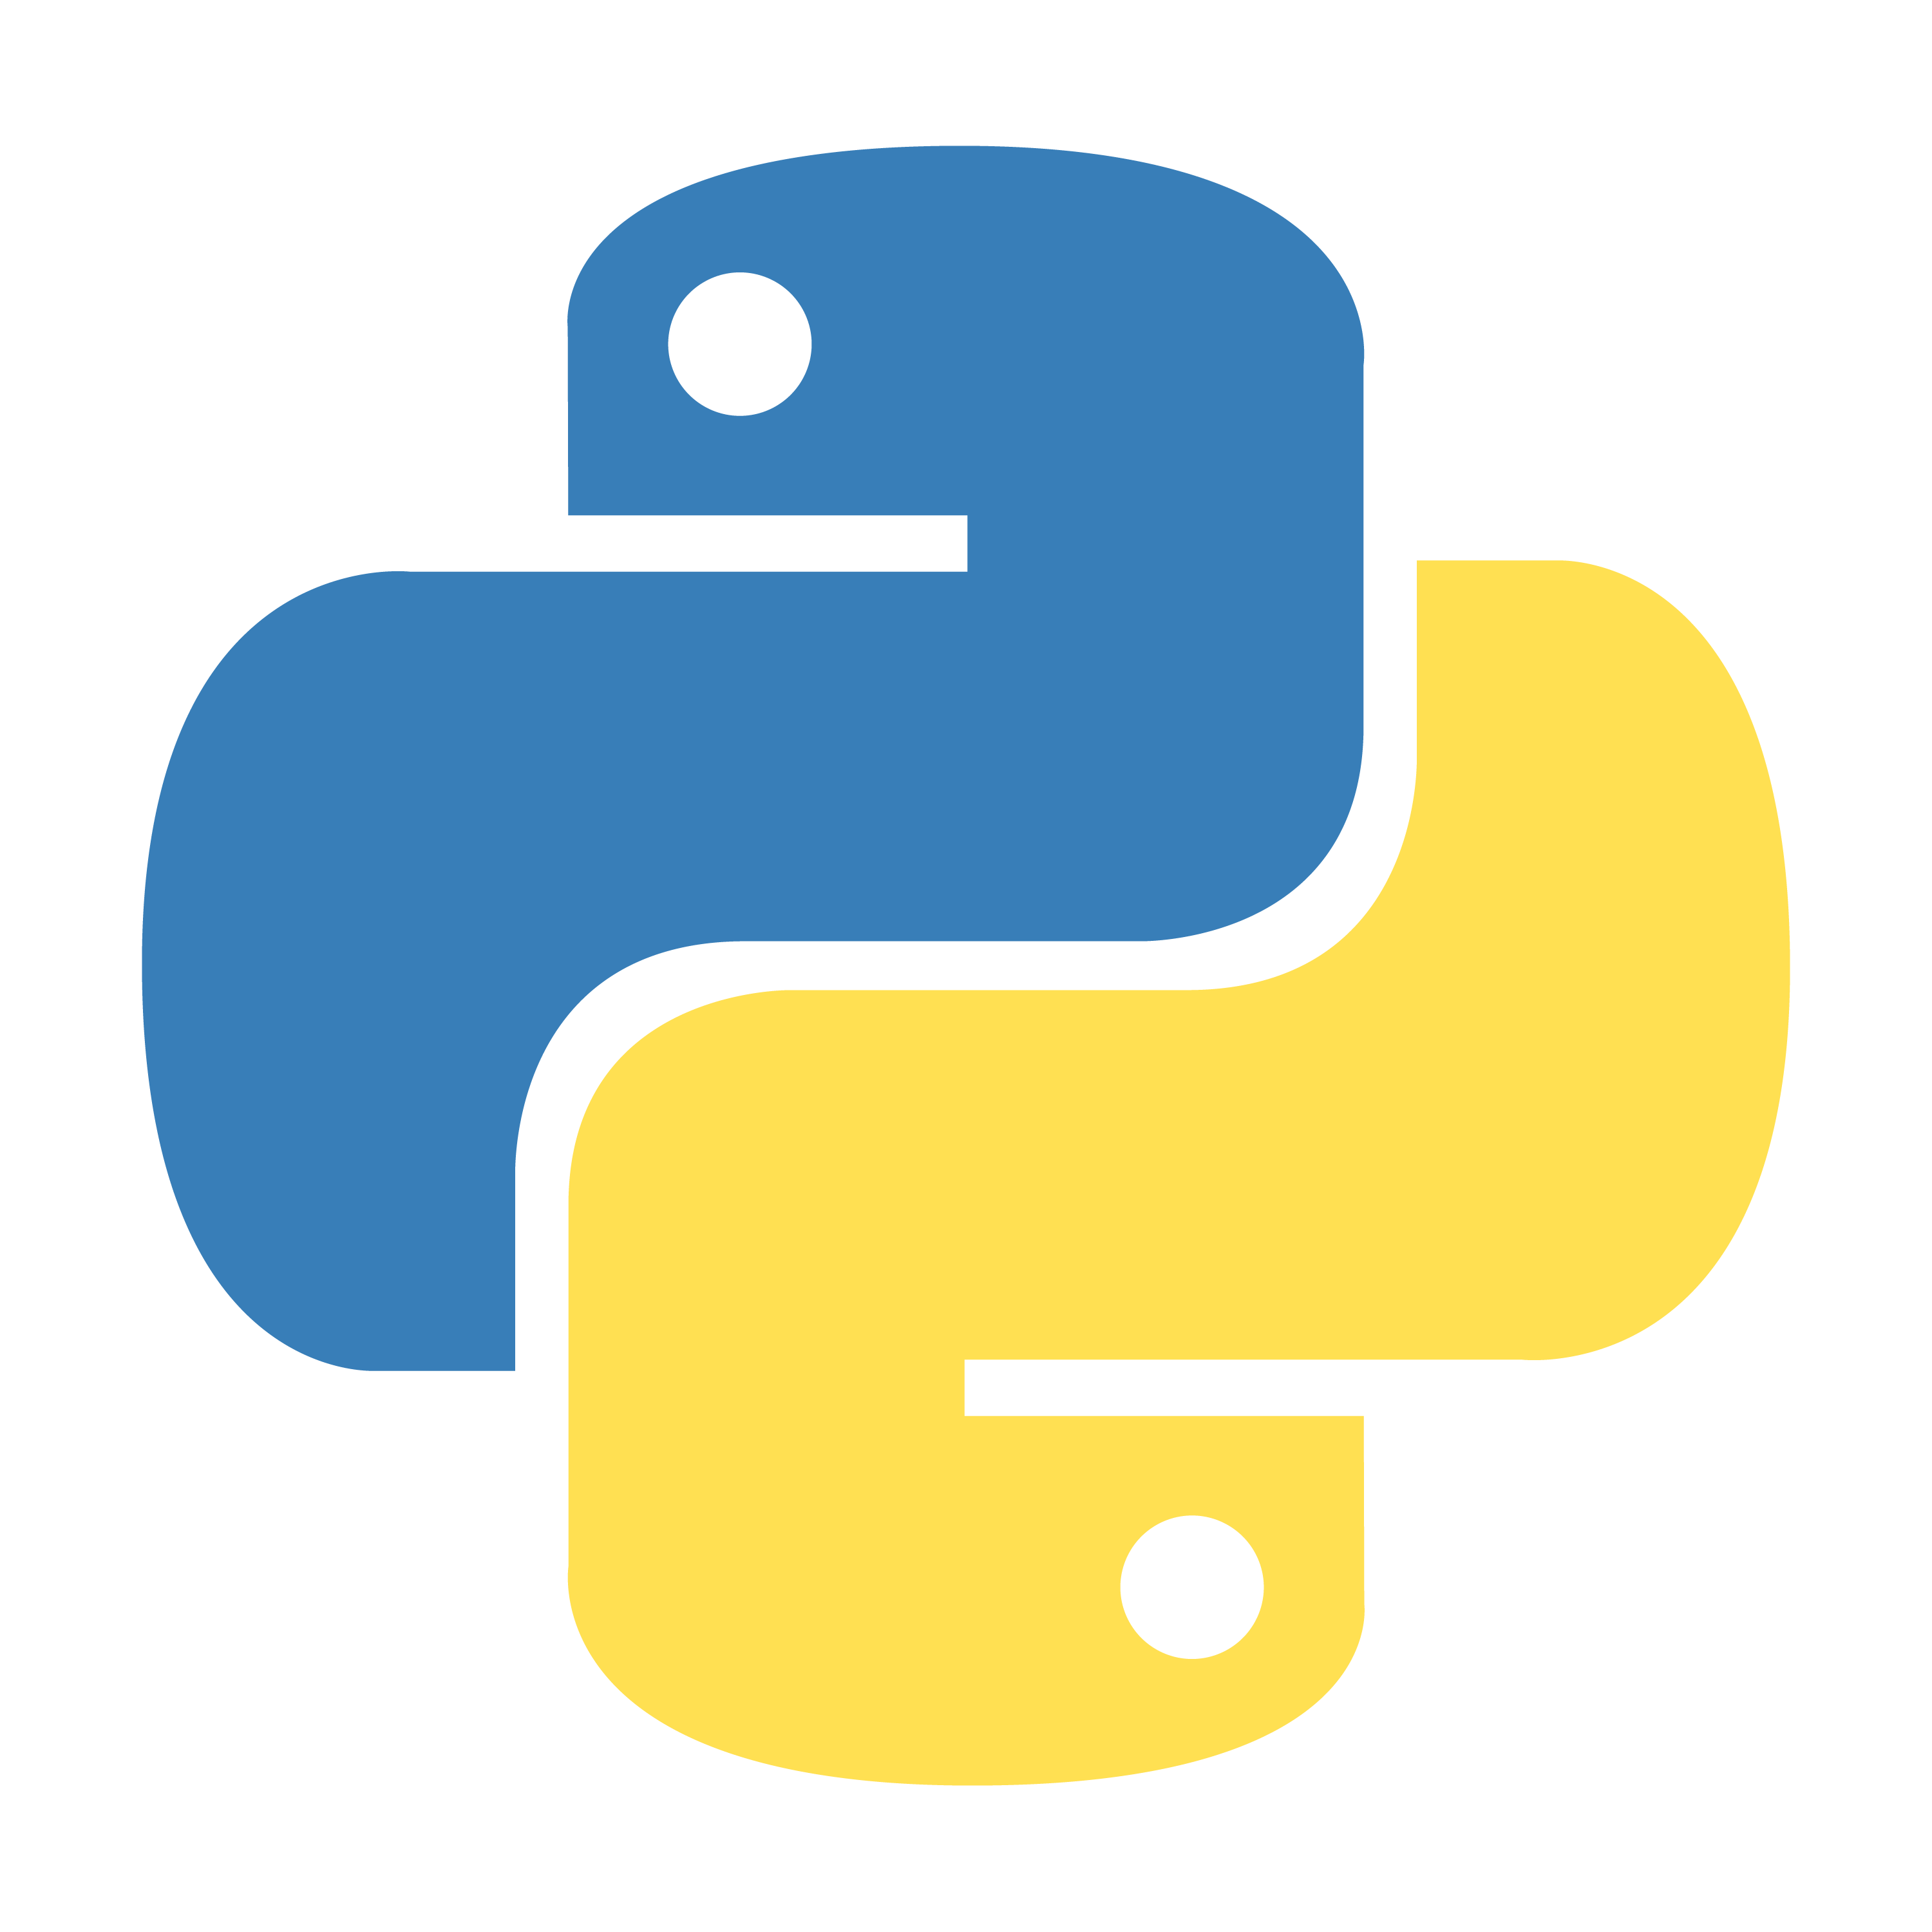 Питон язык программирования лого. Python logo без фона. Python 3. Значок питона. Логотип языка питон